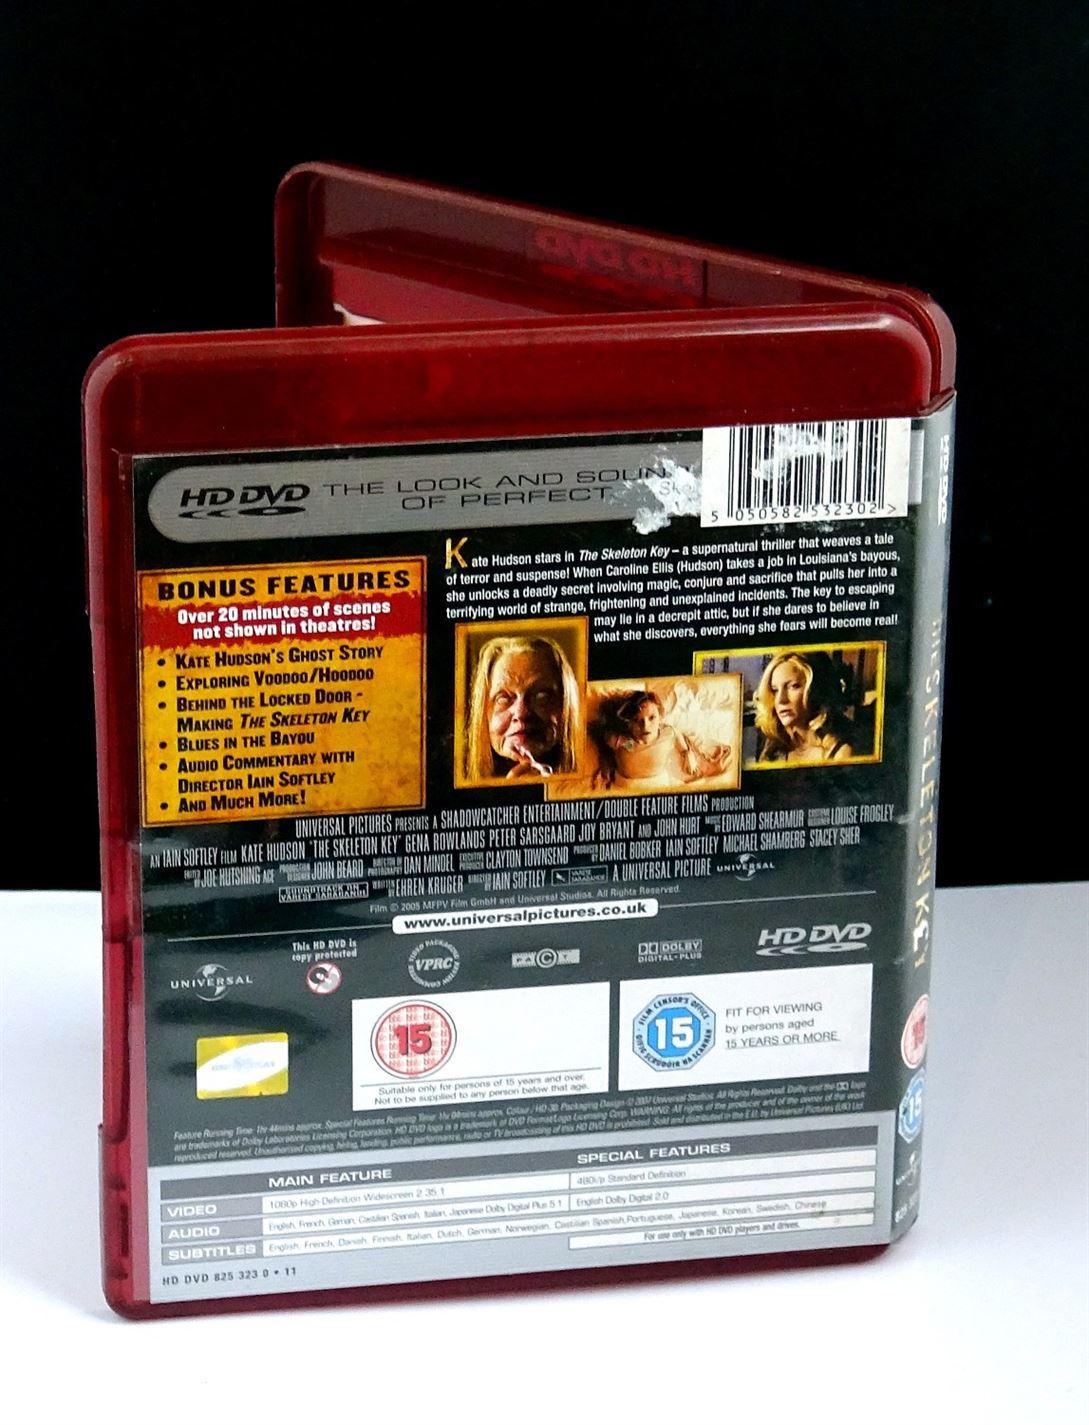 The Skeleton Key (HD DVD) - UK Seller